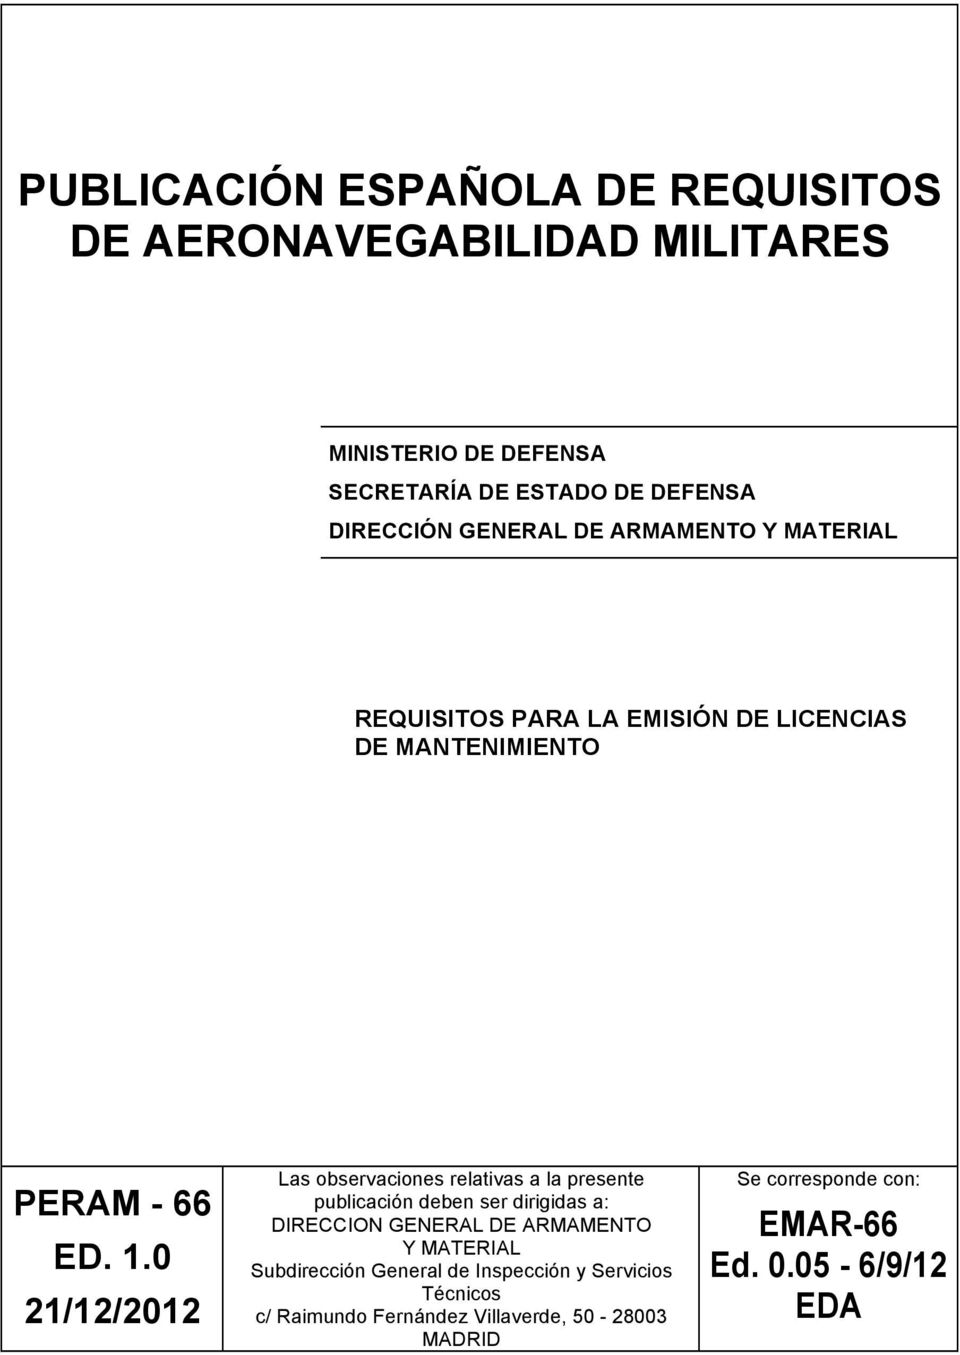 0 21/12/2012 Las observaciones relativas a la presente publicación deben ser dirigidas a: DIRECCION GENERAL DE ARMAMENTO Y